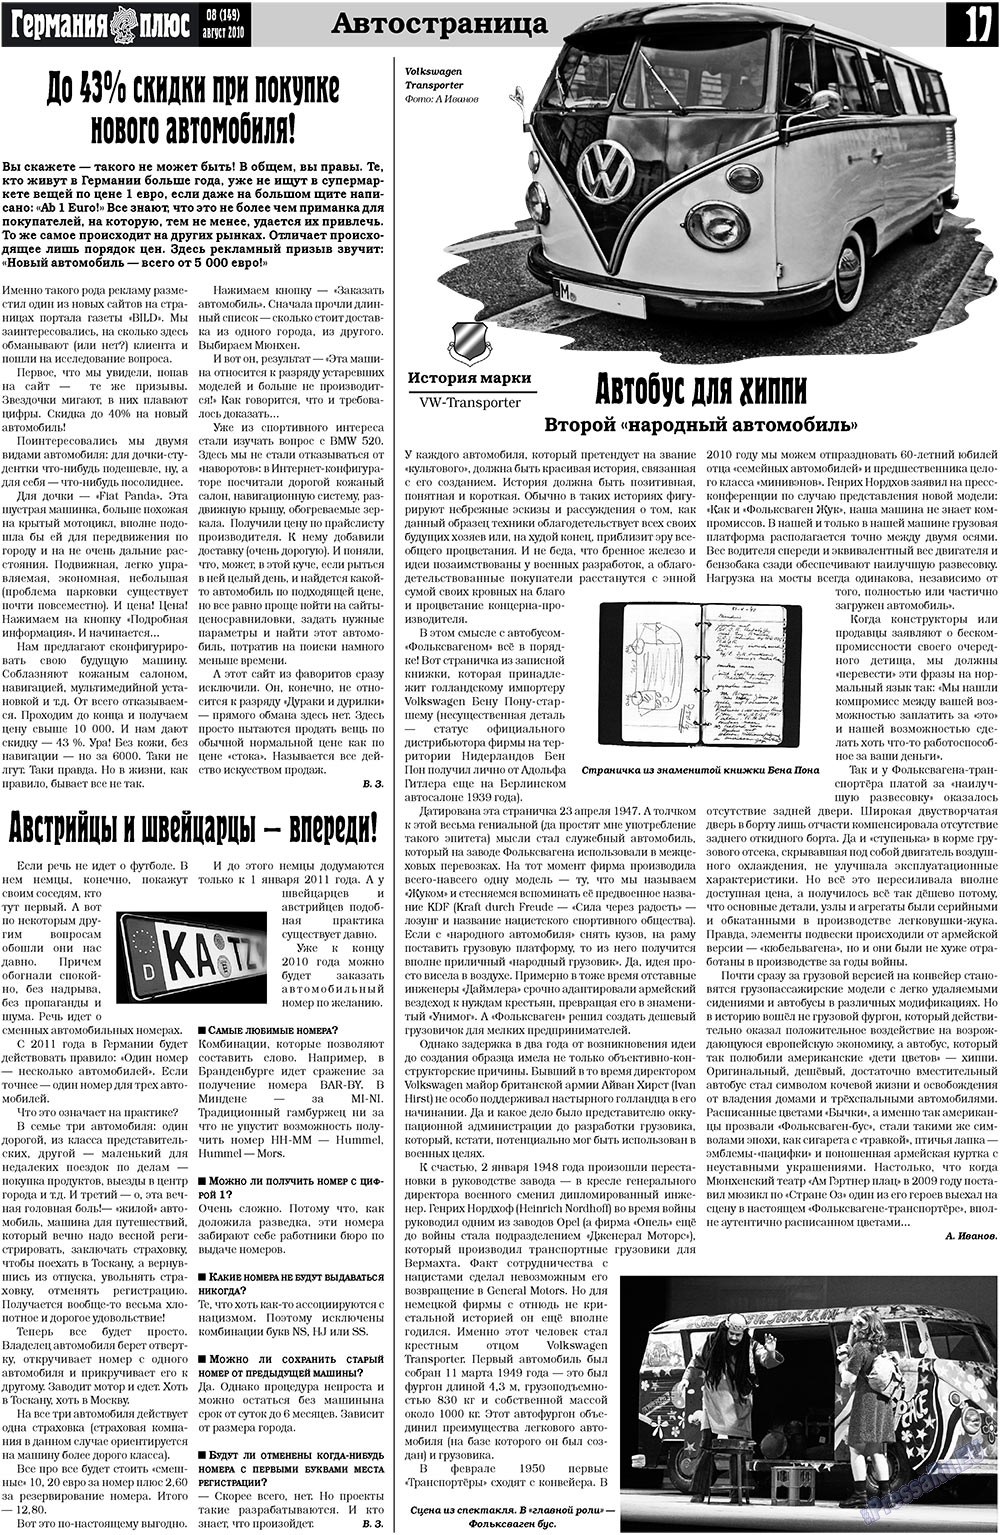 Германия плюс, газета. 2010 №8 стр.17